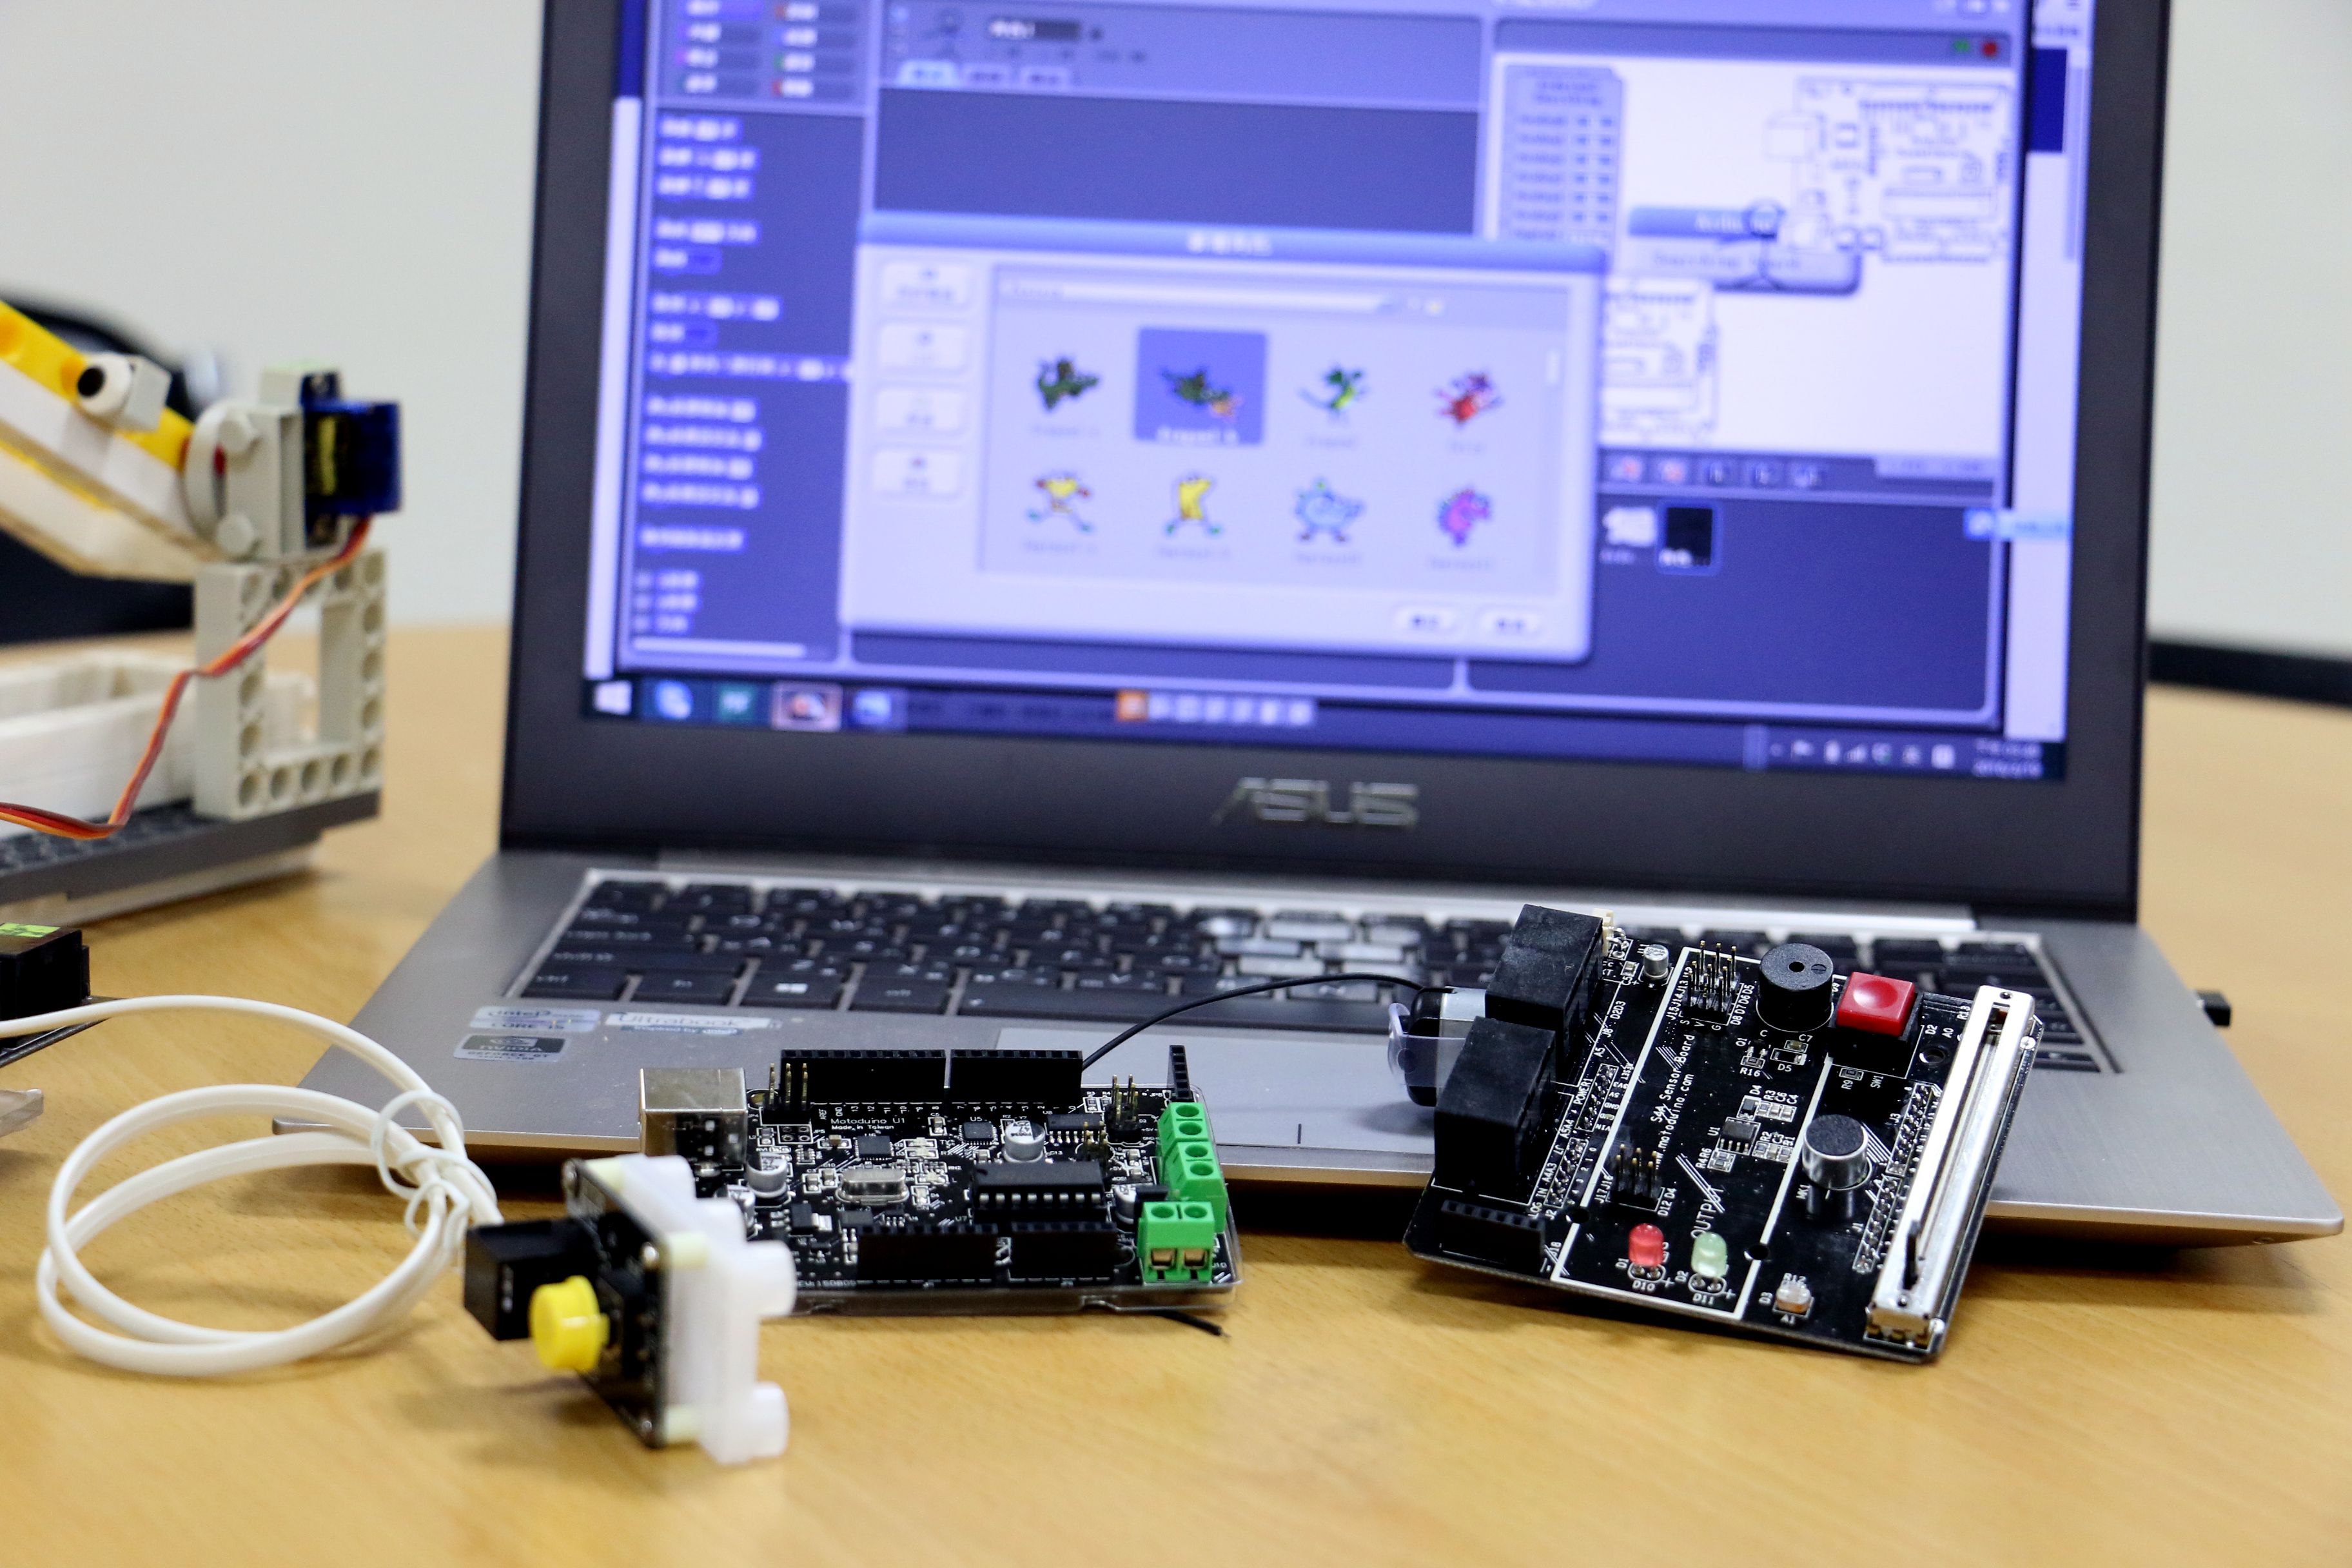 【Maker Club】用 Scratch 玩 Arduino入門第一課！認識Scratch介面開發環境，玩好積木角色及造型